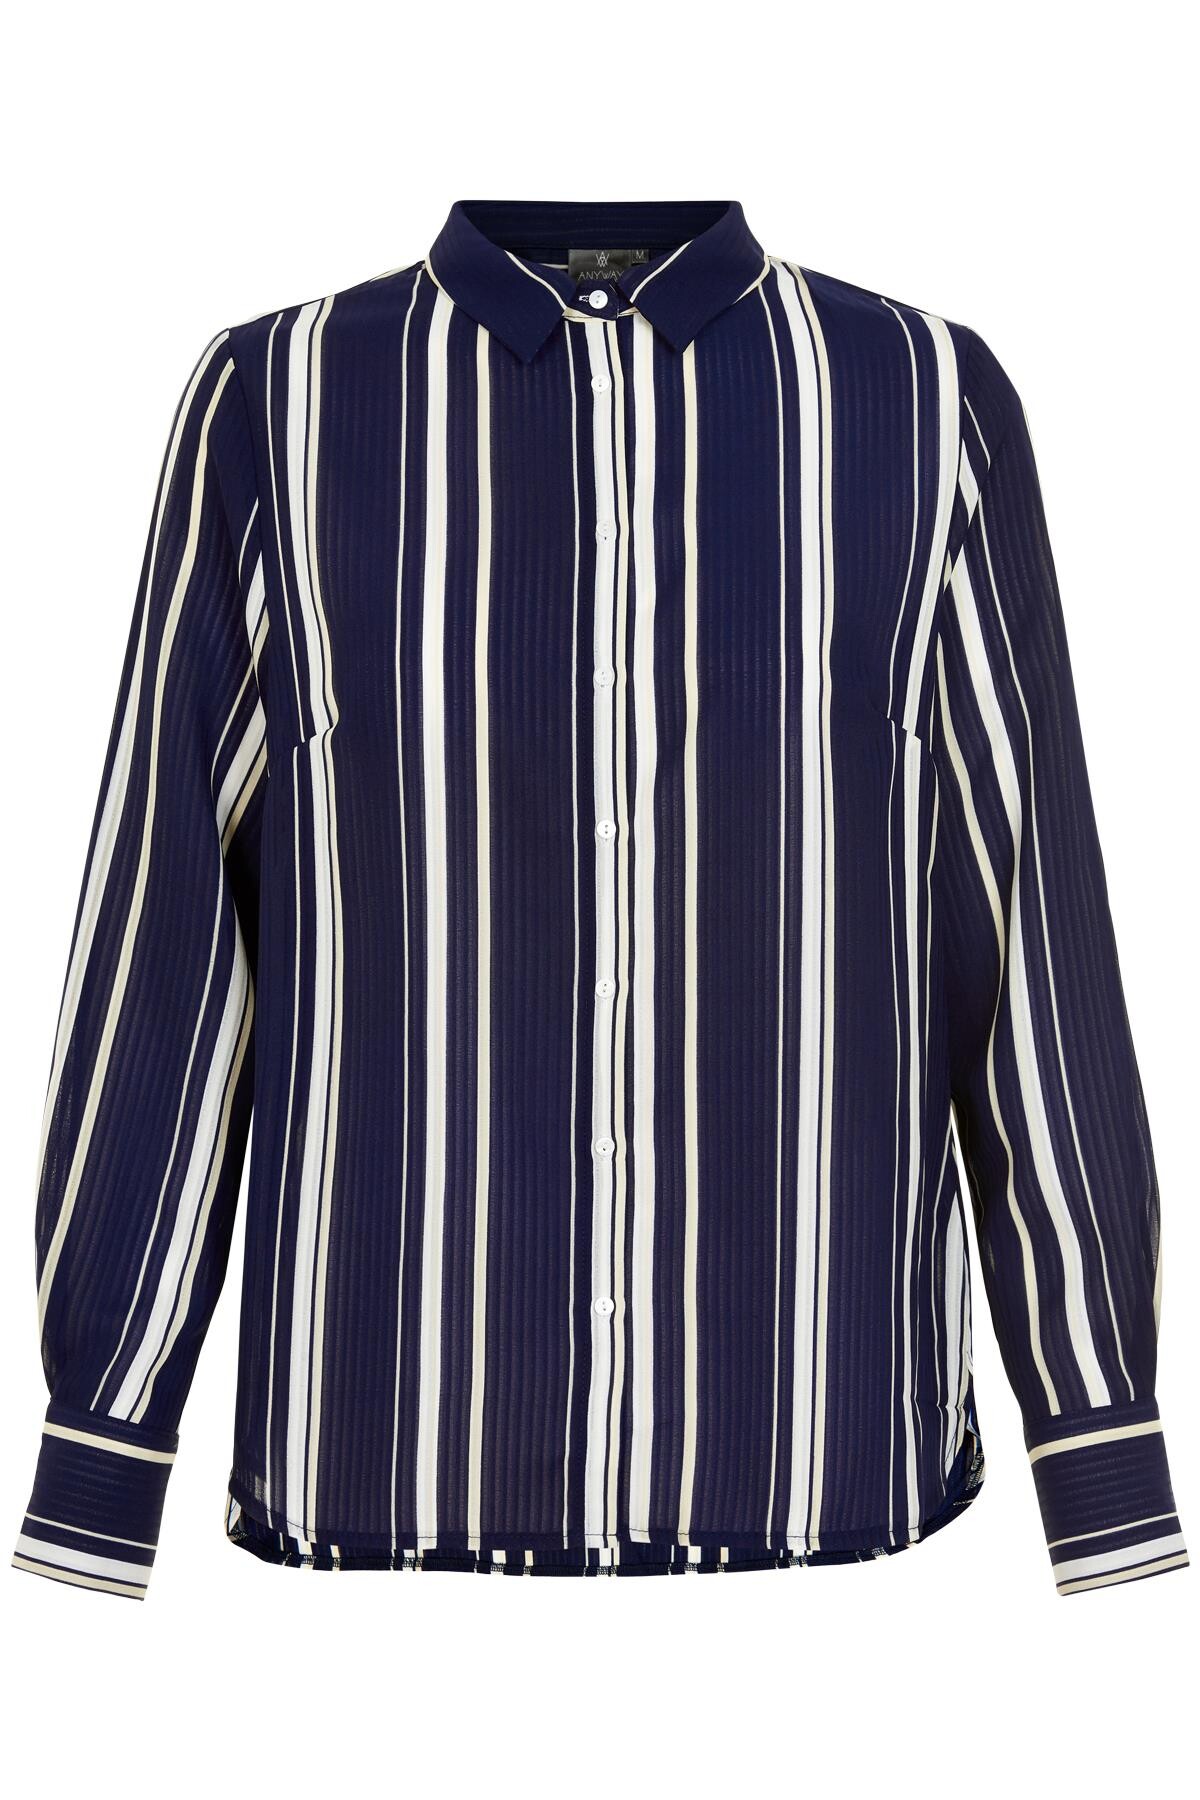 Anyway Striped Skjorte Rc, Farve: Blå, Størrelse: M, Dame